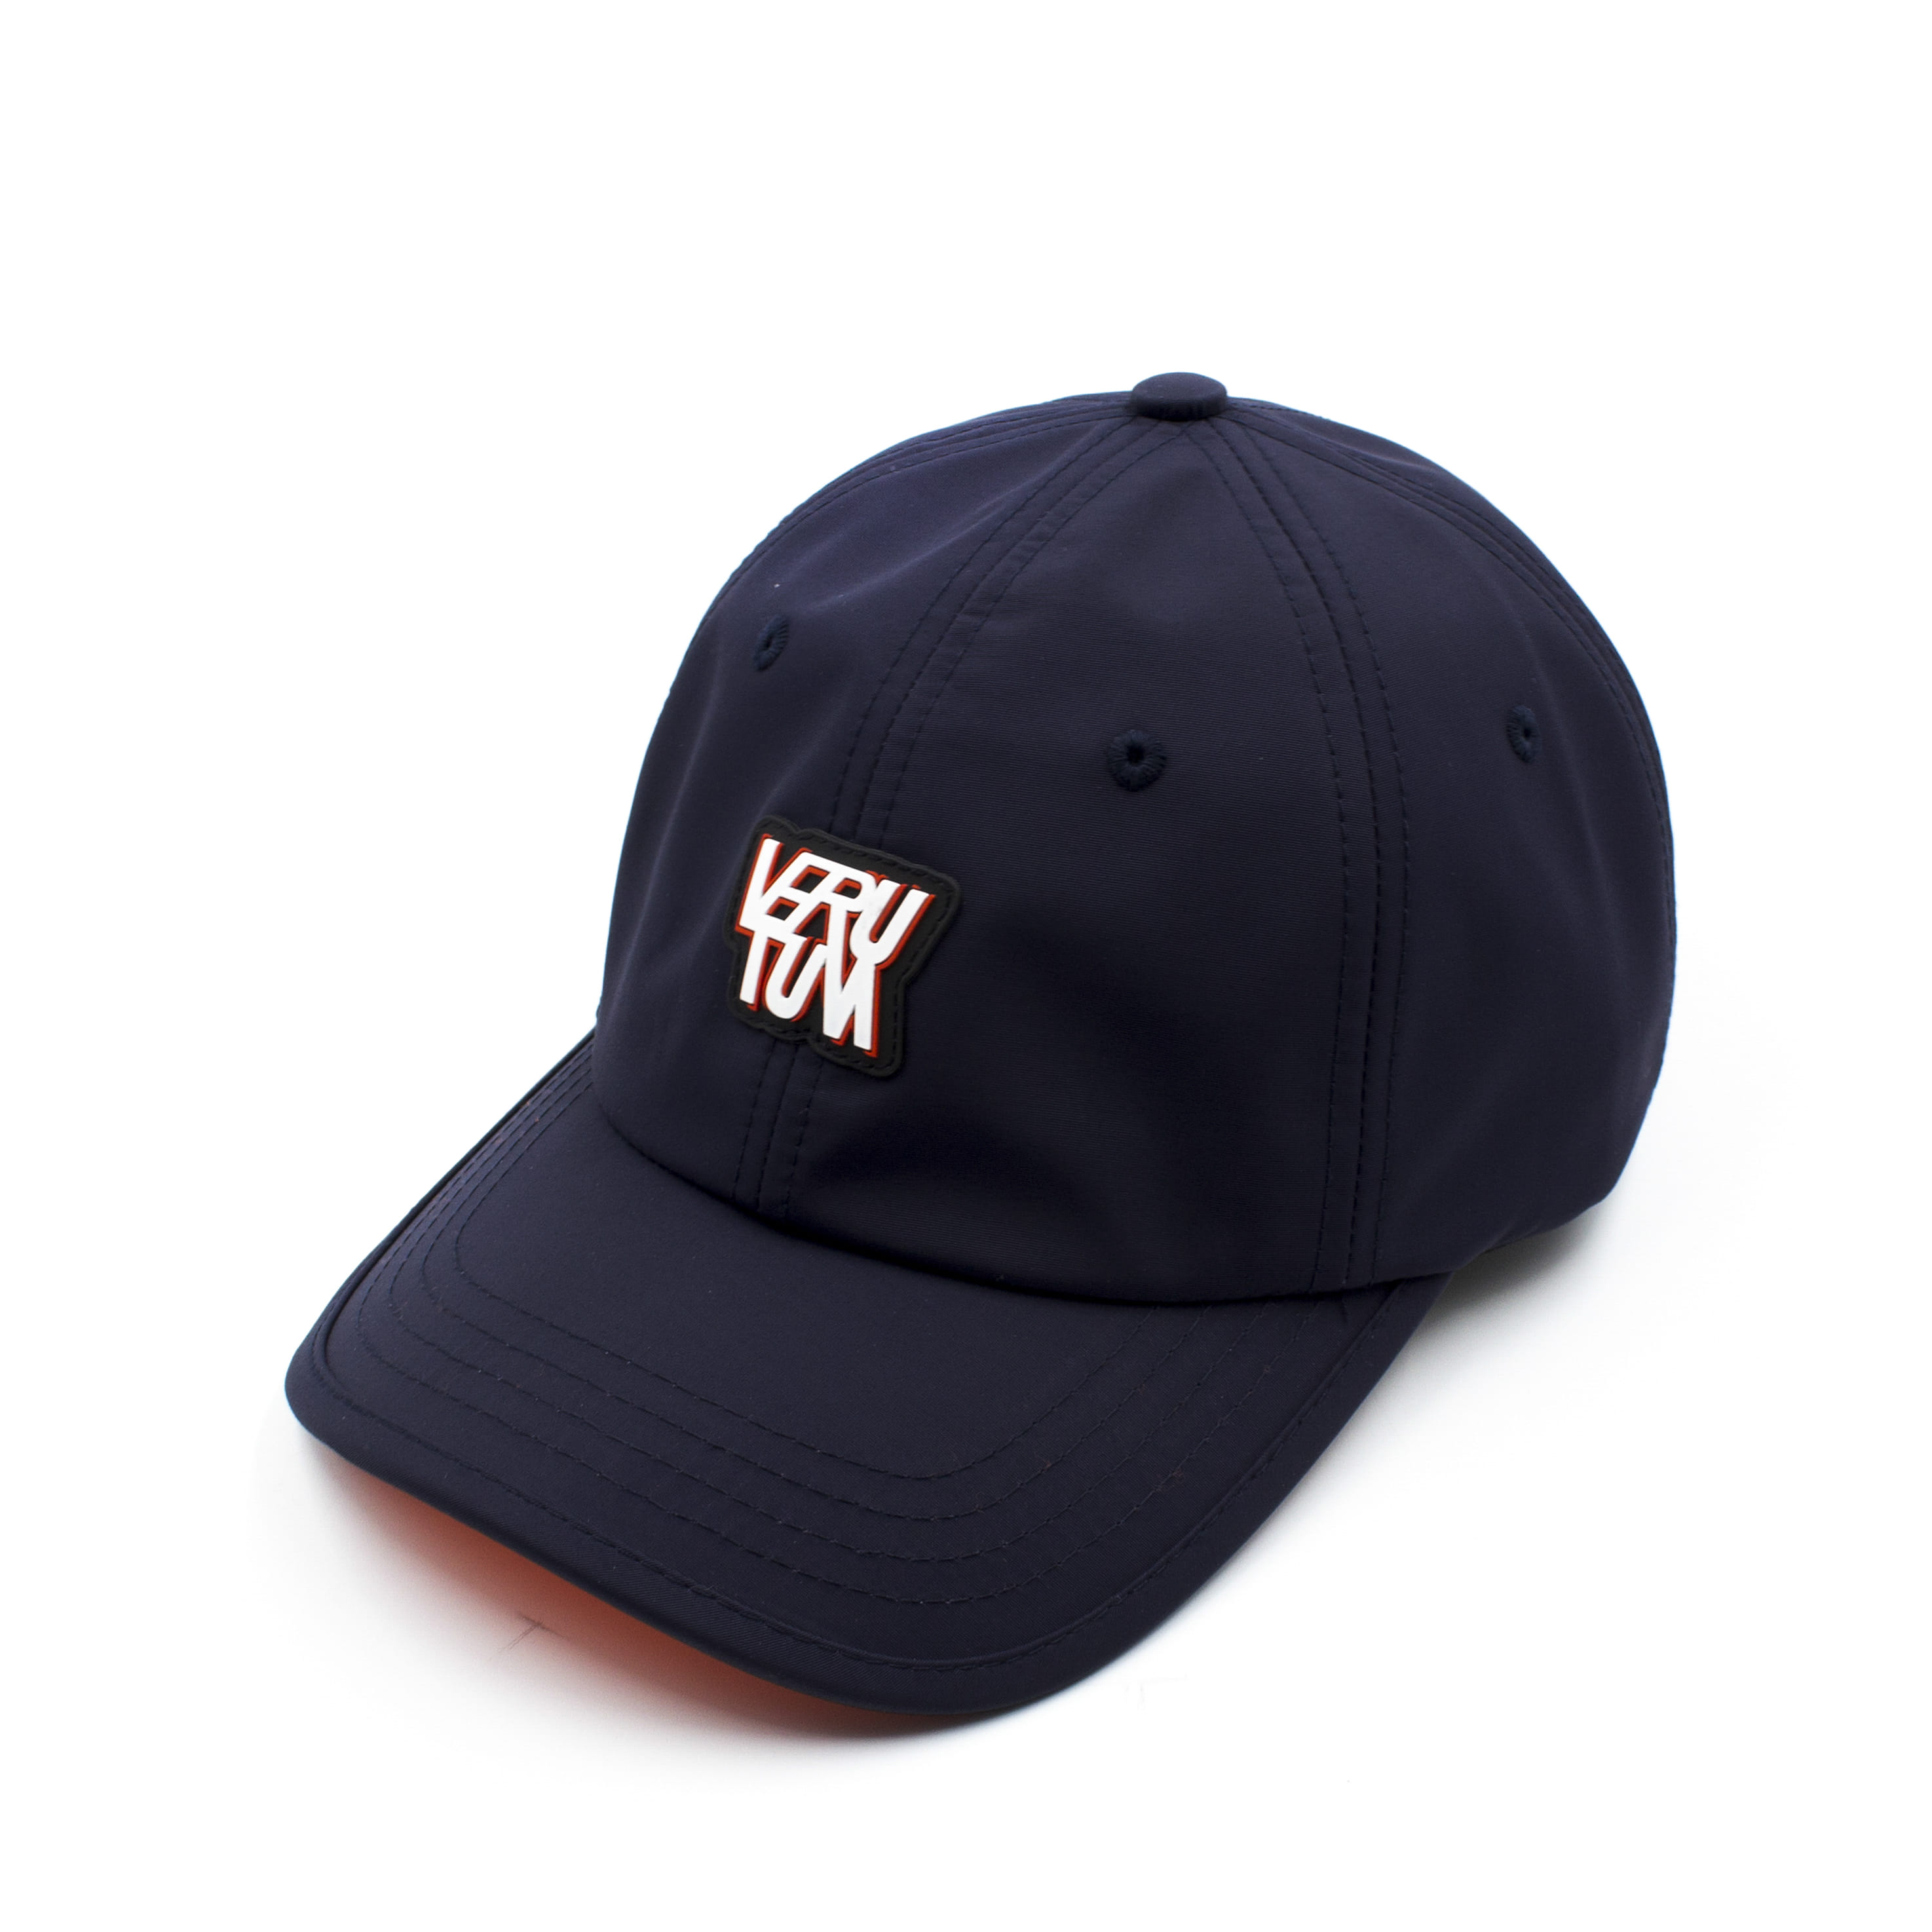 HW-VSH004 : Navy│VERUTUM Sports Cap